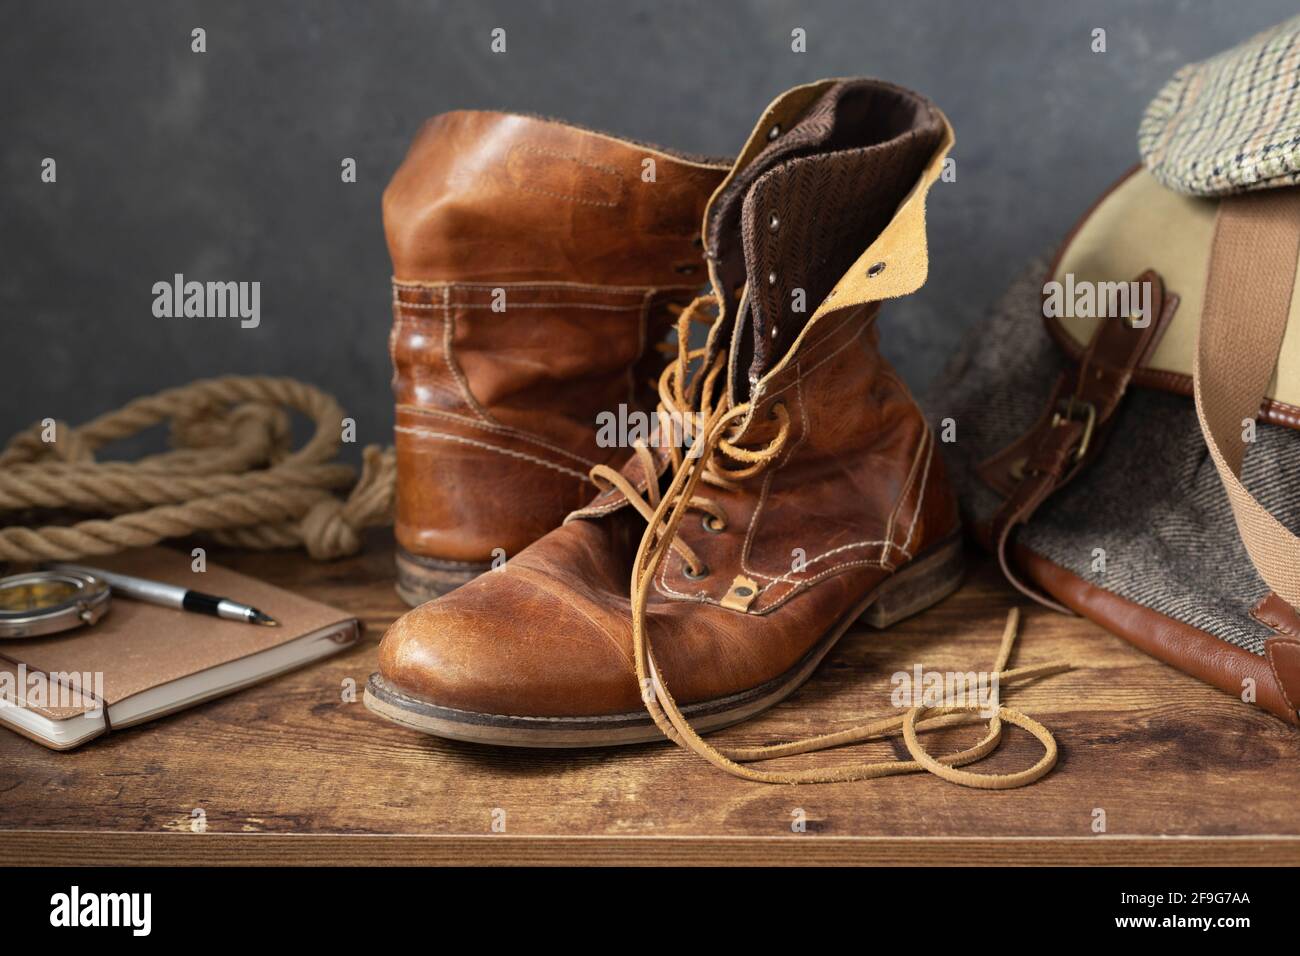 Alte Leder Reise Vintage Stiefel Schuhe und Tasche an Holztisch, mit Wand  Hintergrundstruktur Stockfotografie - Alamy